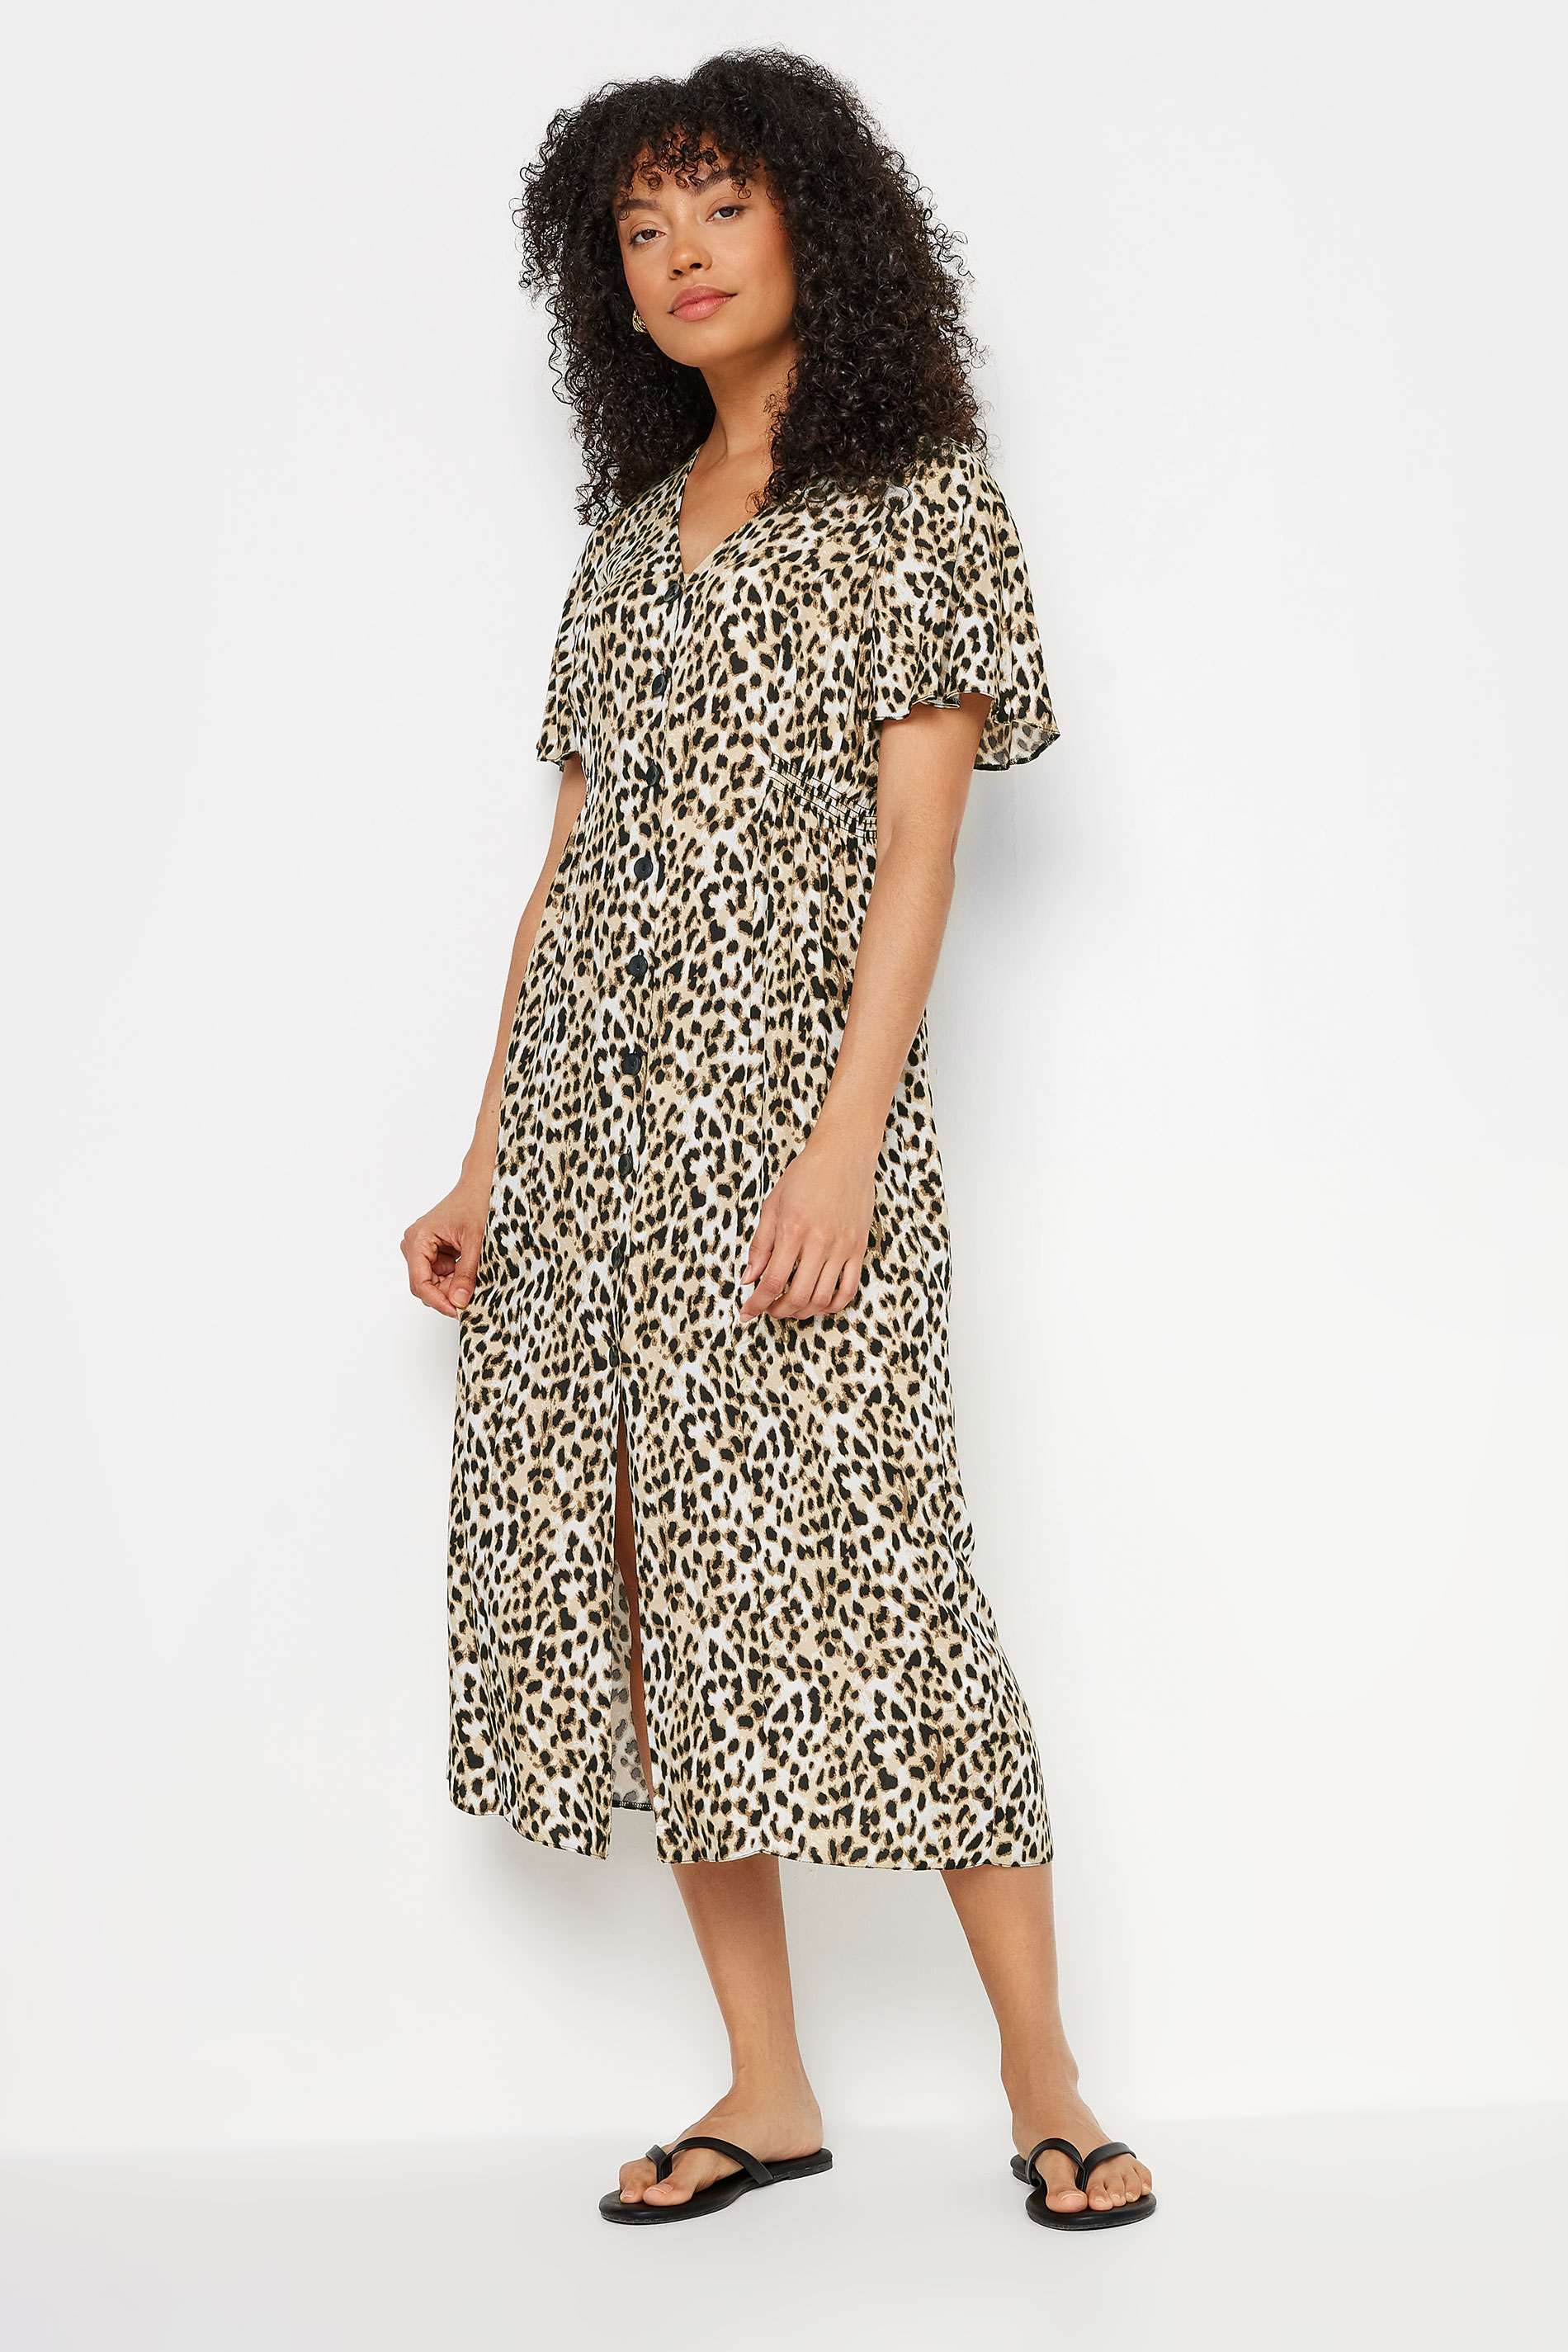 M&Co Natural Brown Leopard Print Button Through Midi Tea Dress | M&Co 1